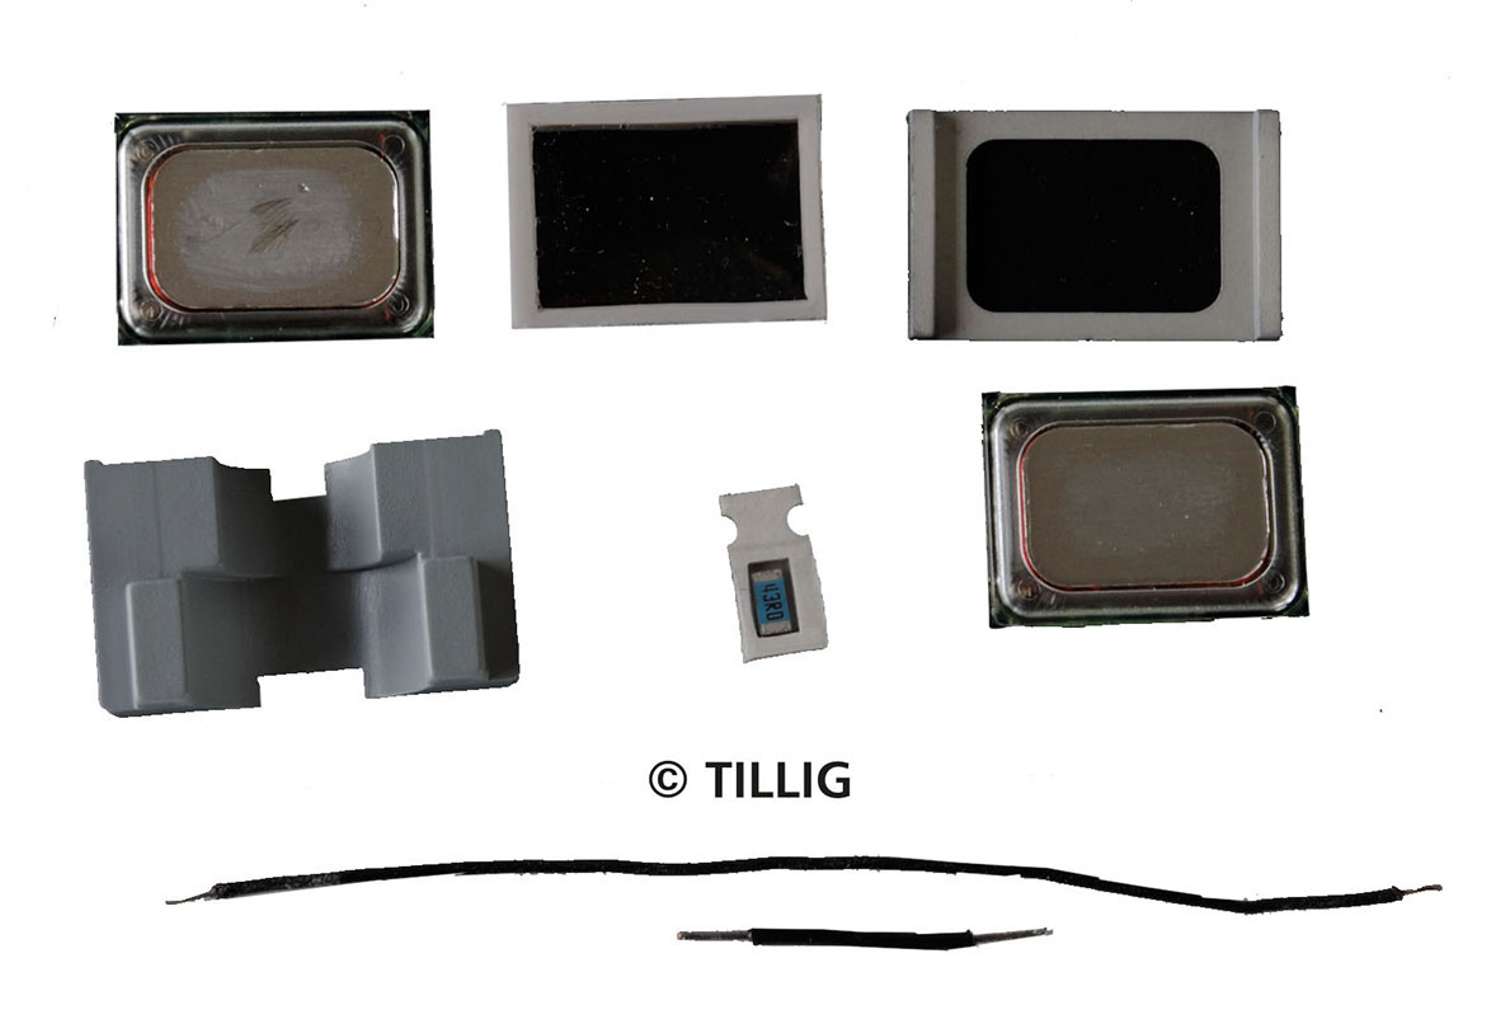 Tillig 66053 - Sounddecoder für E94, inkl. Lautsprecher und Resonanzkörper